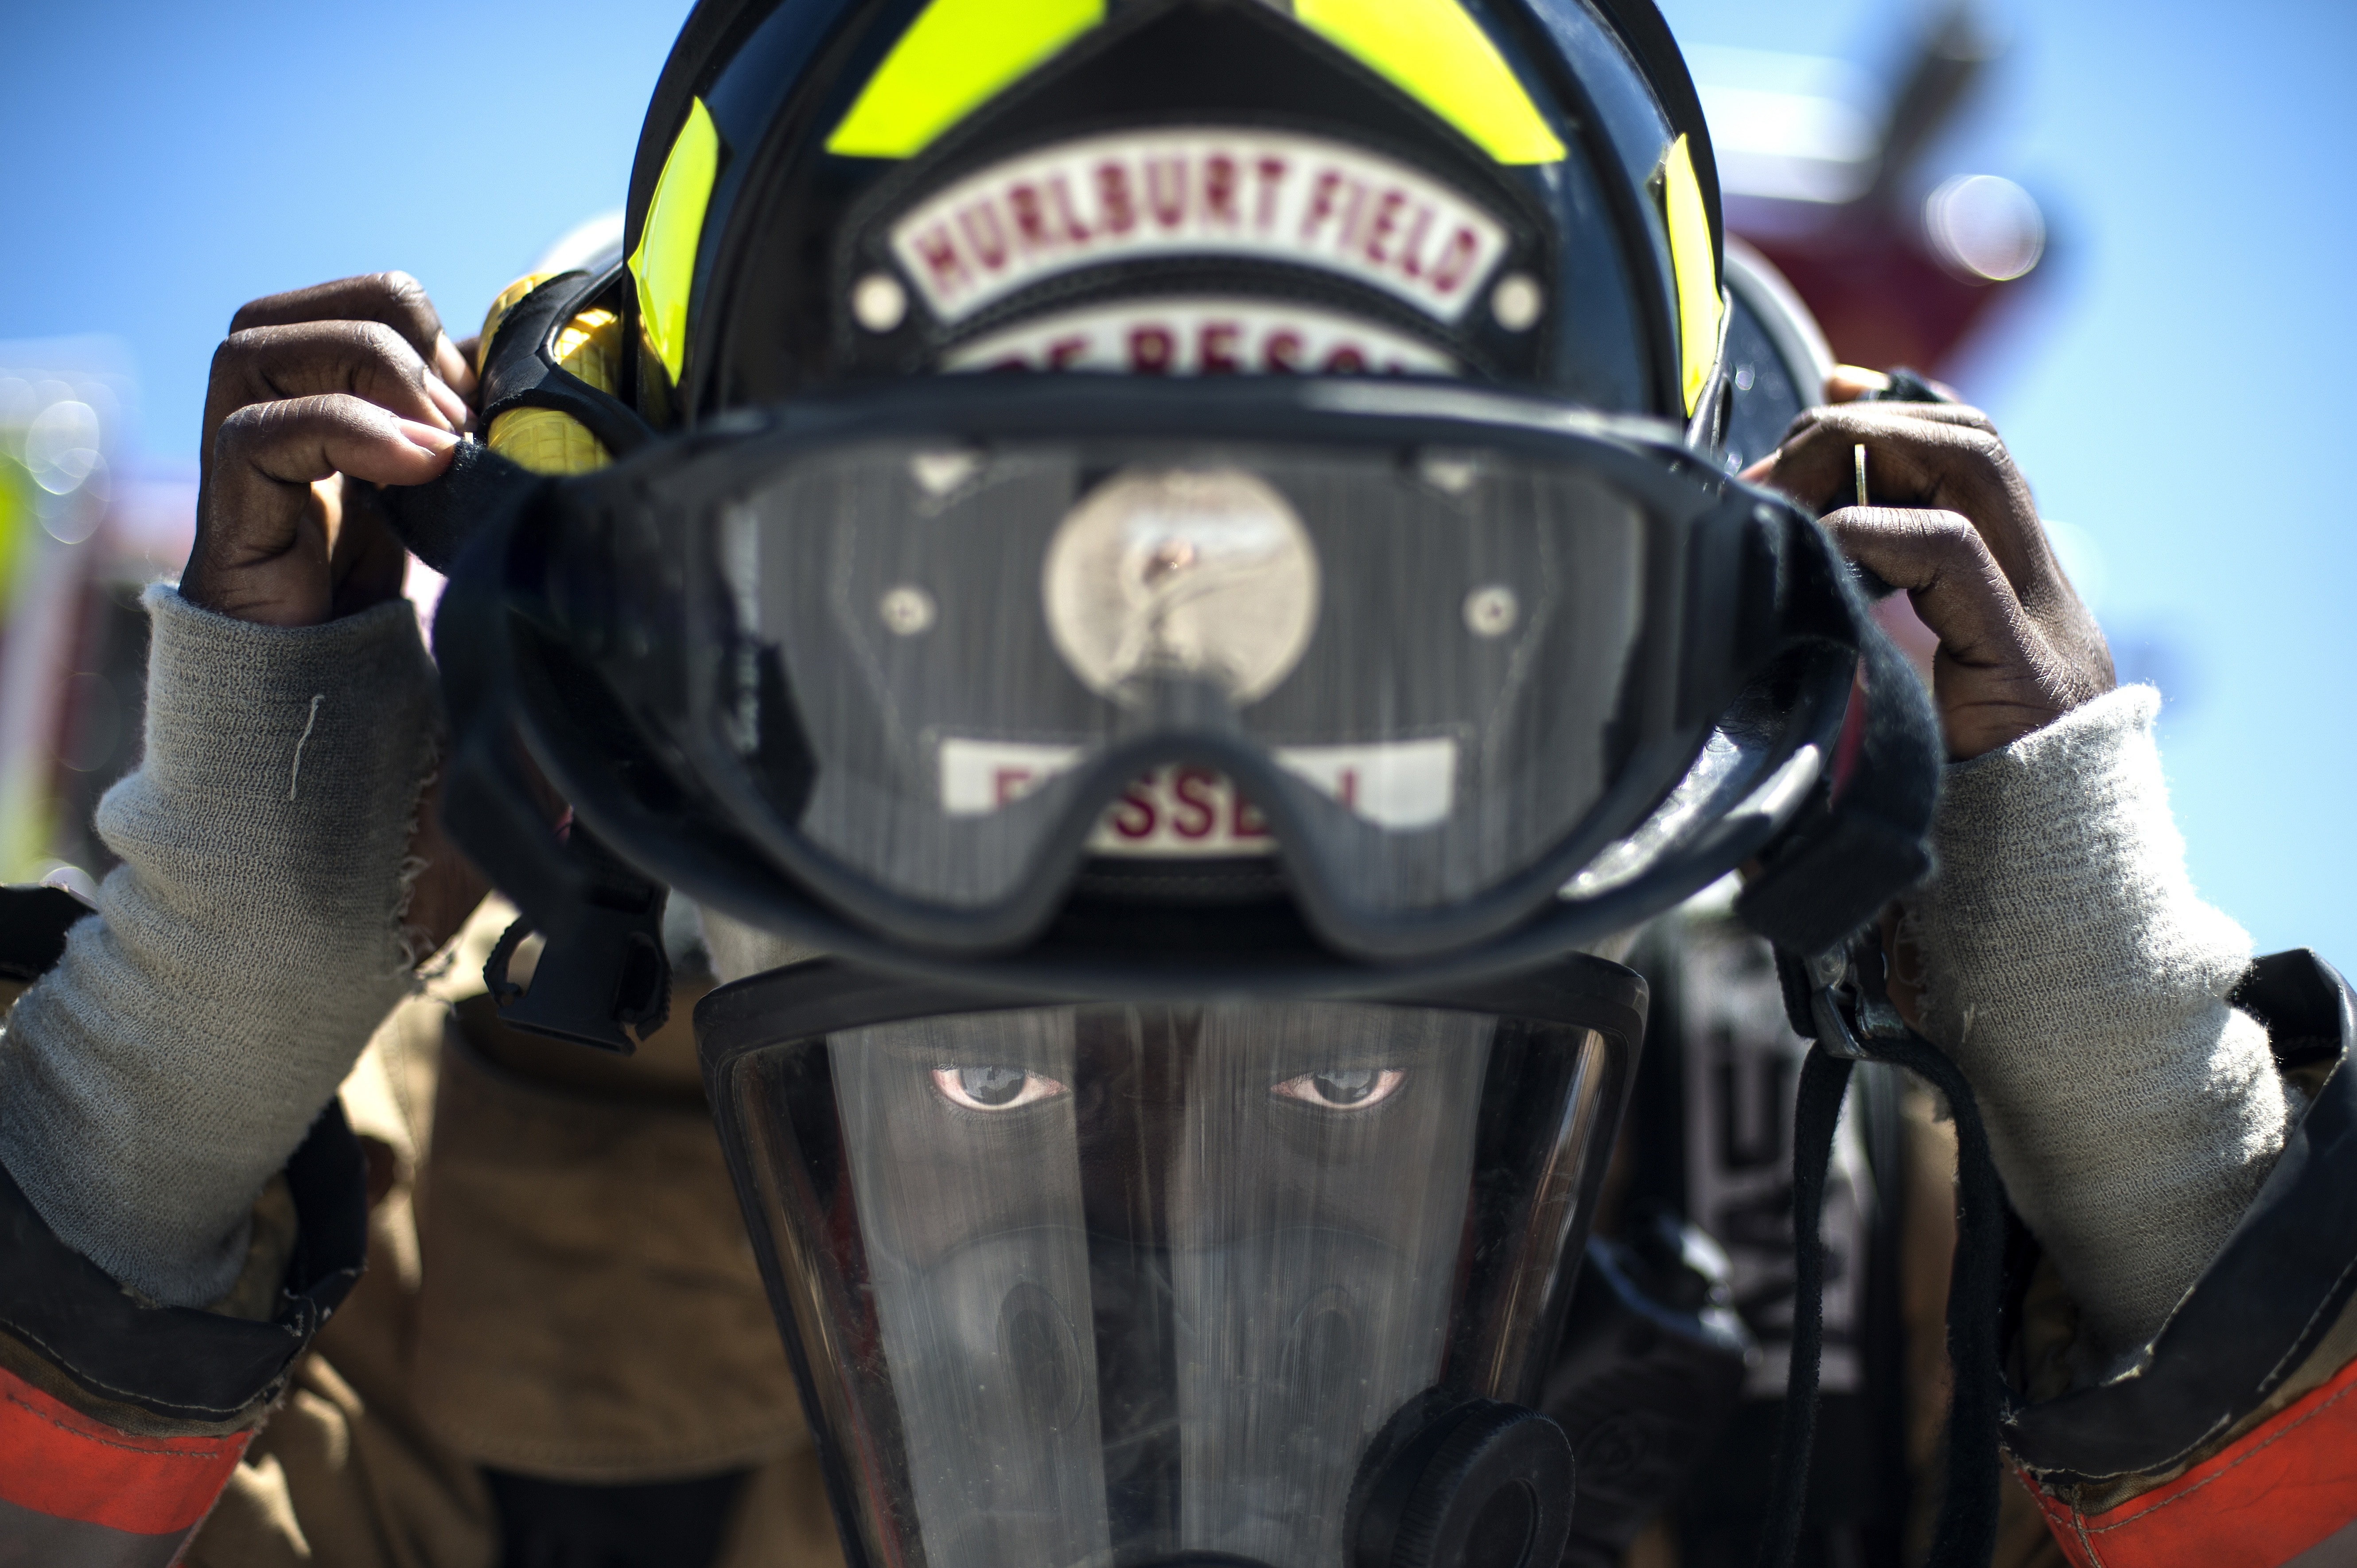 Equipment, Firefighter, Gear, Helmet, motorcycle, helmet